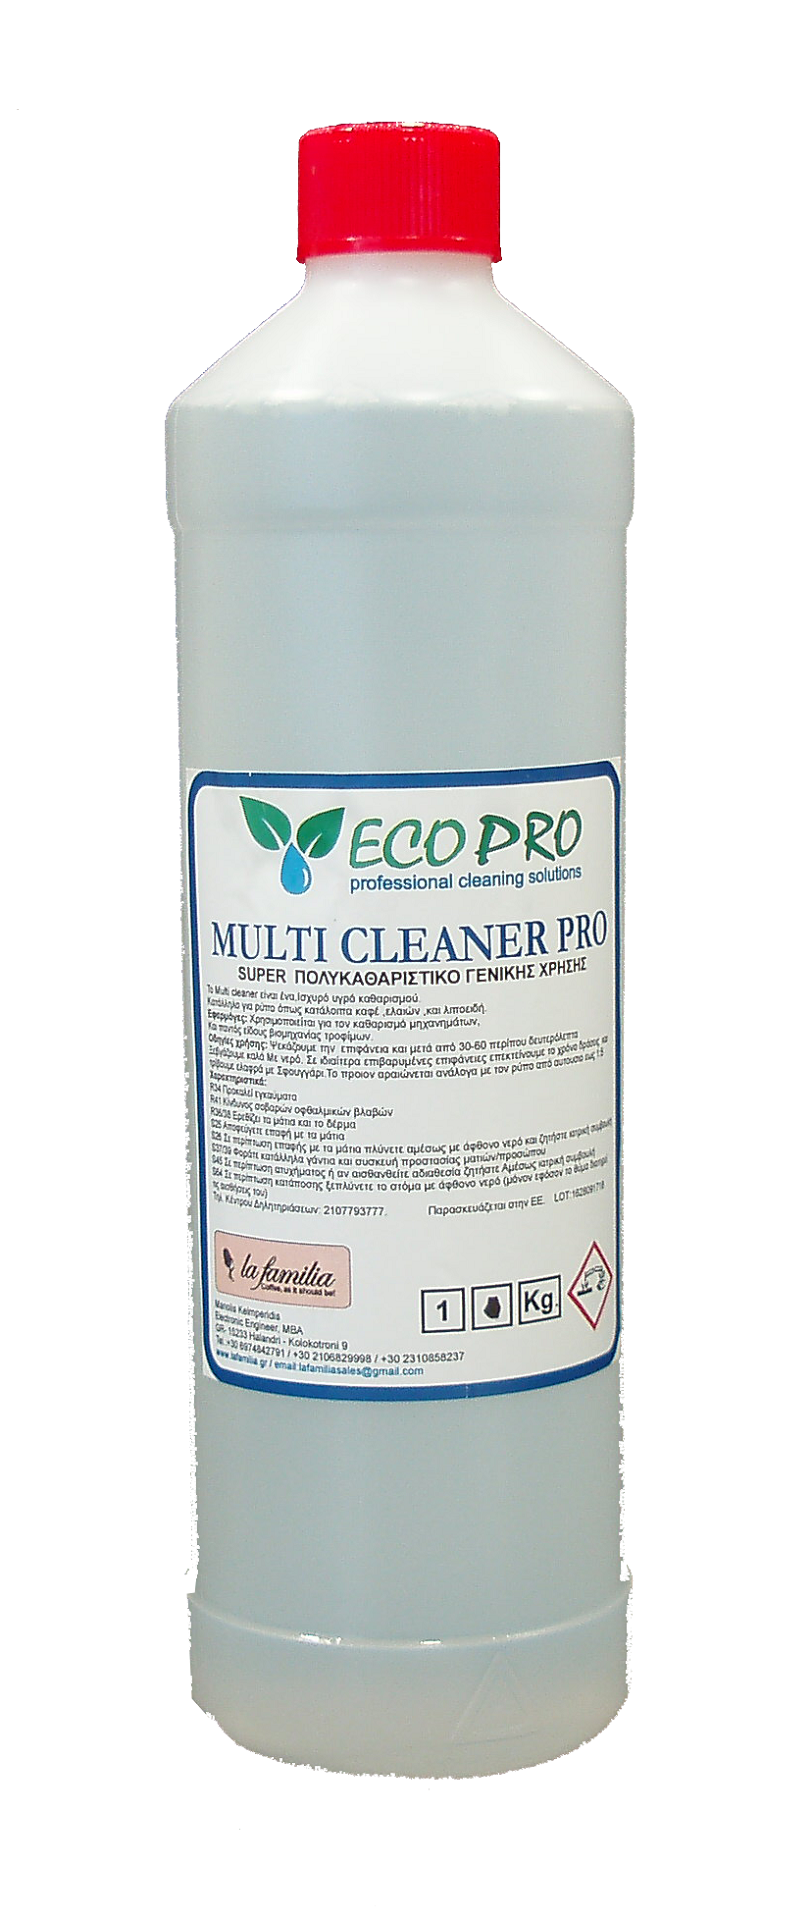 Multi cleaner pro